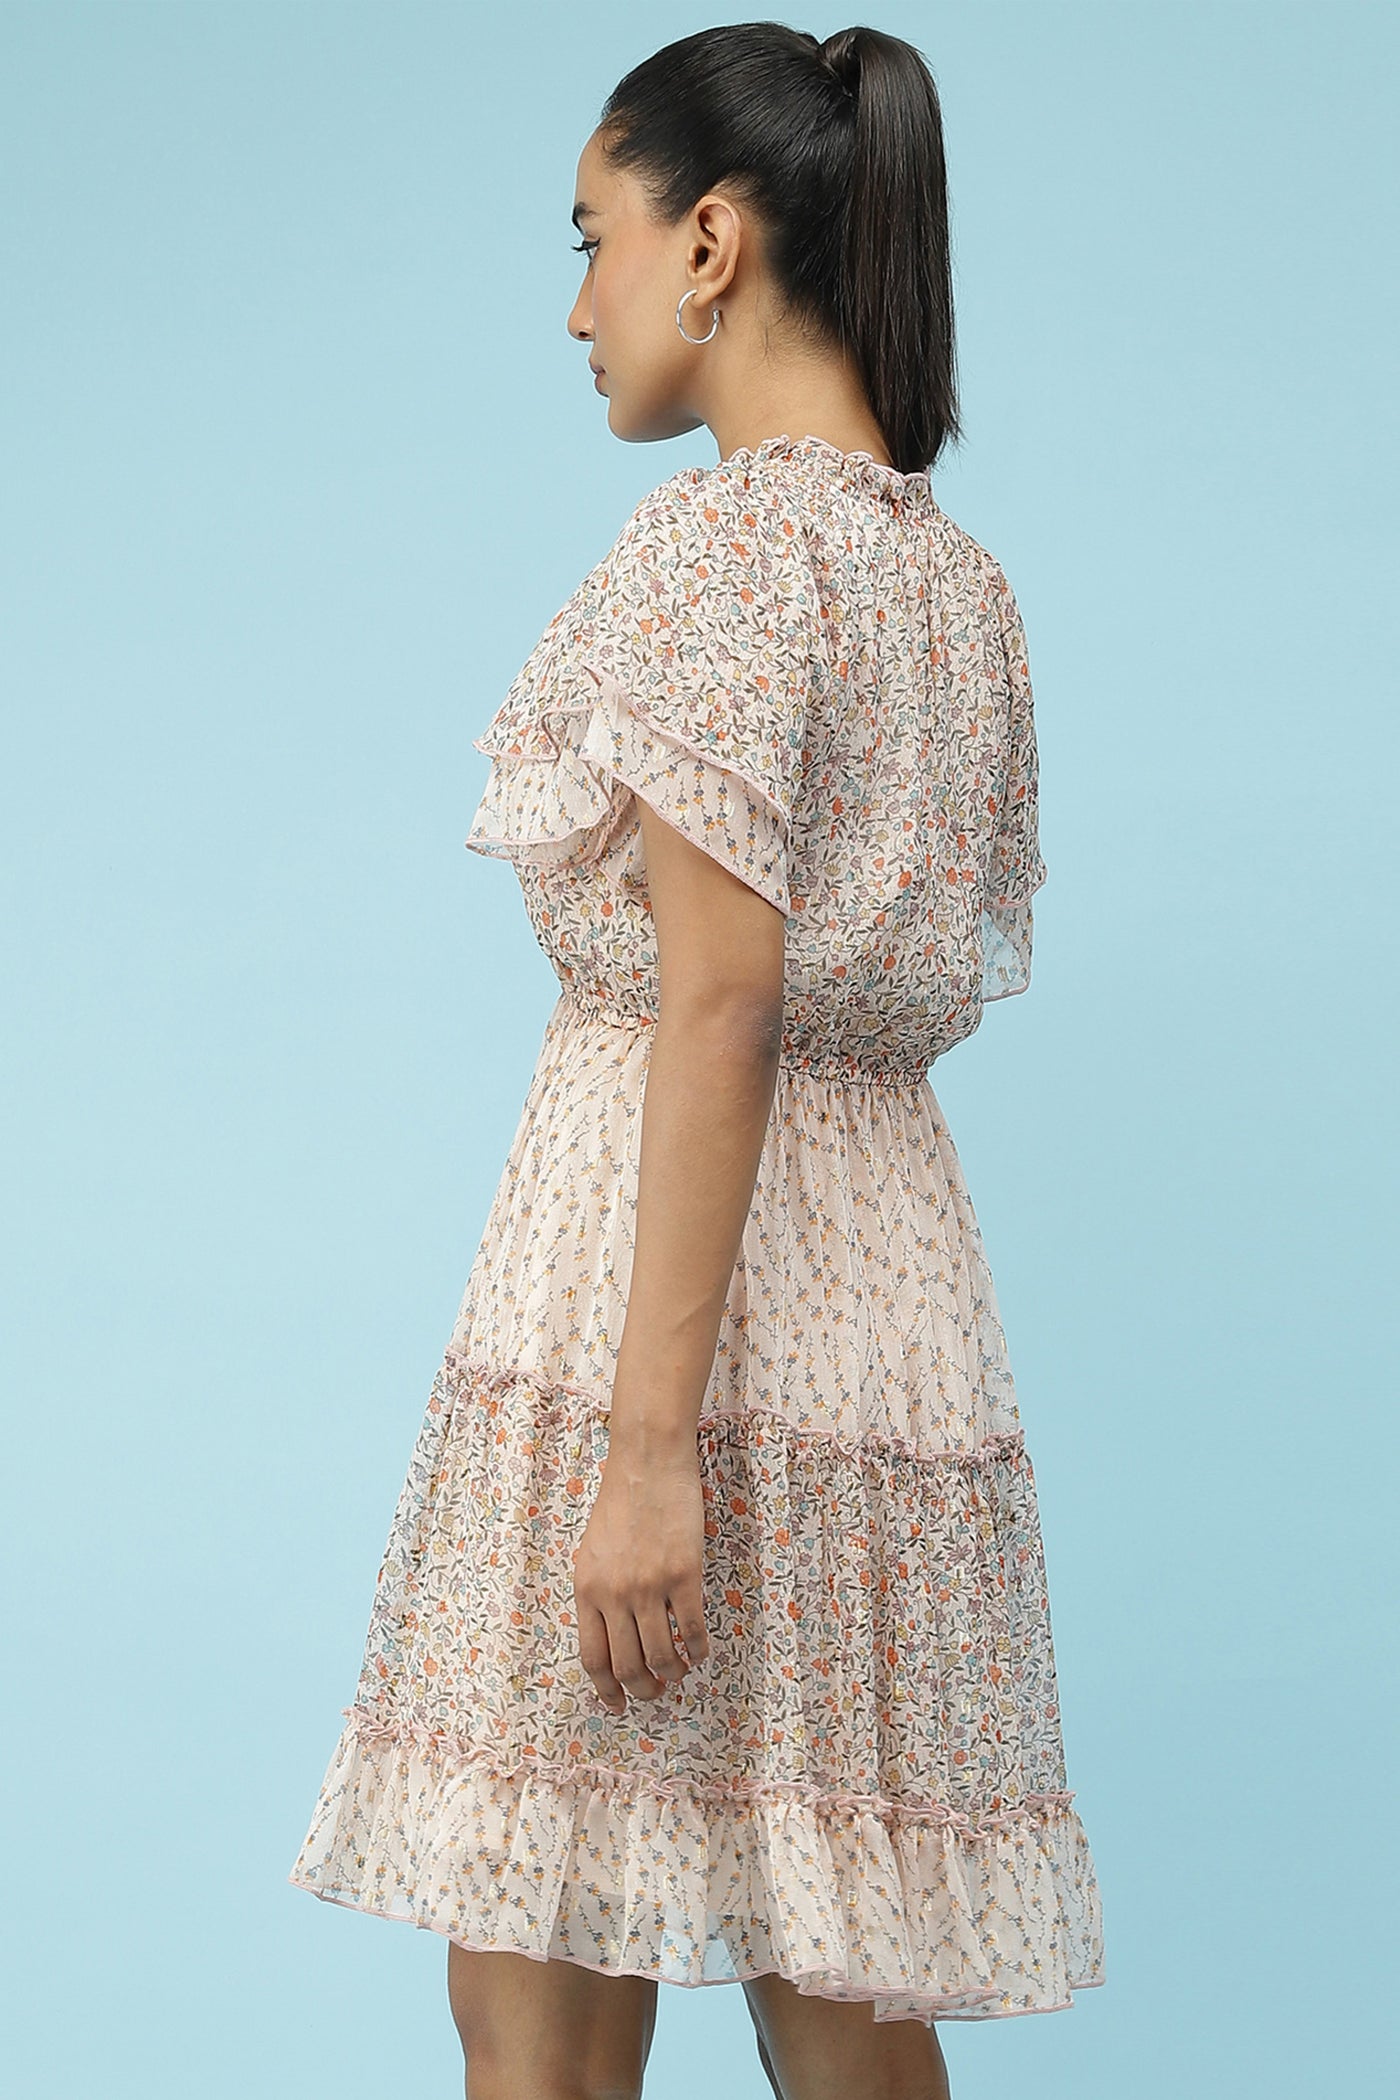 label ritu kumarPink Floral Printed Short Dress  western  designer wear online shopping melange singapore